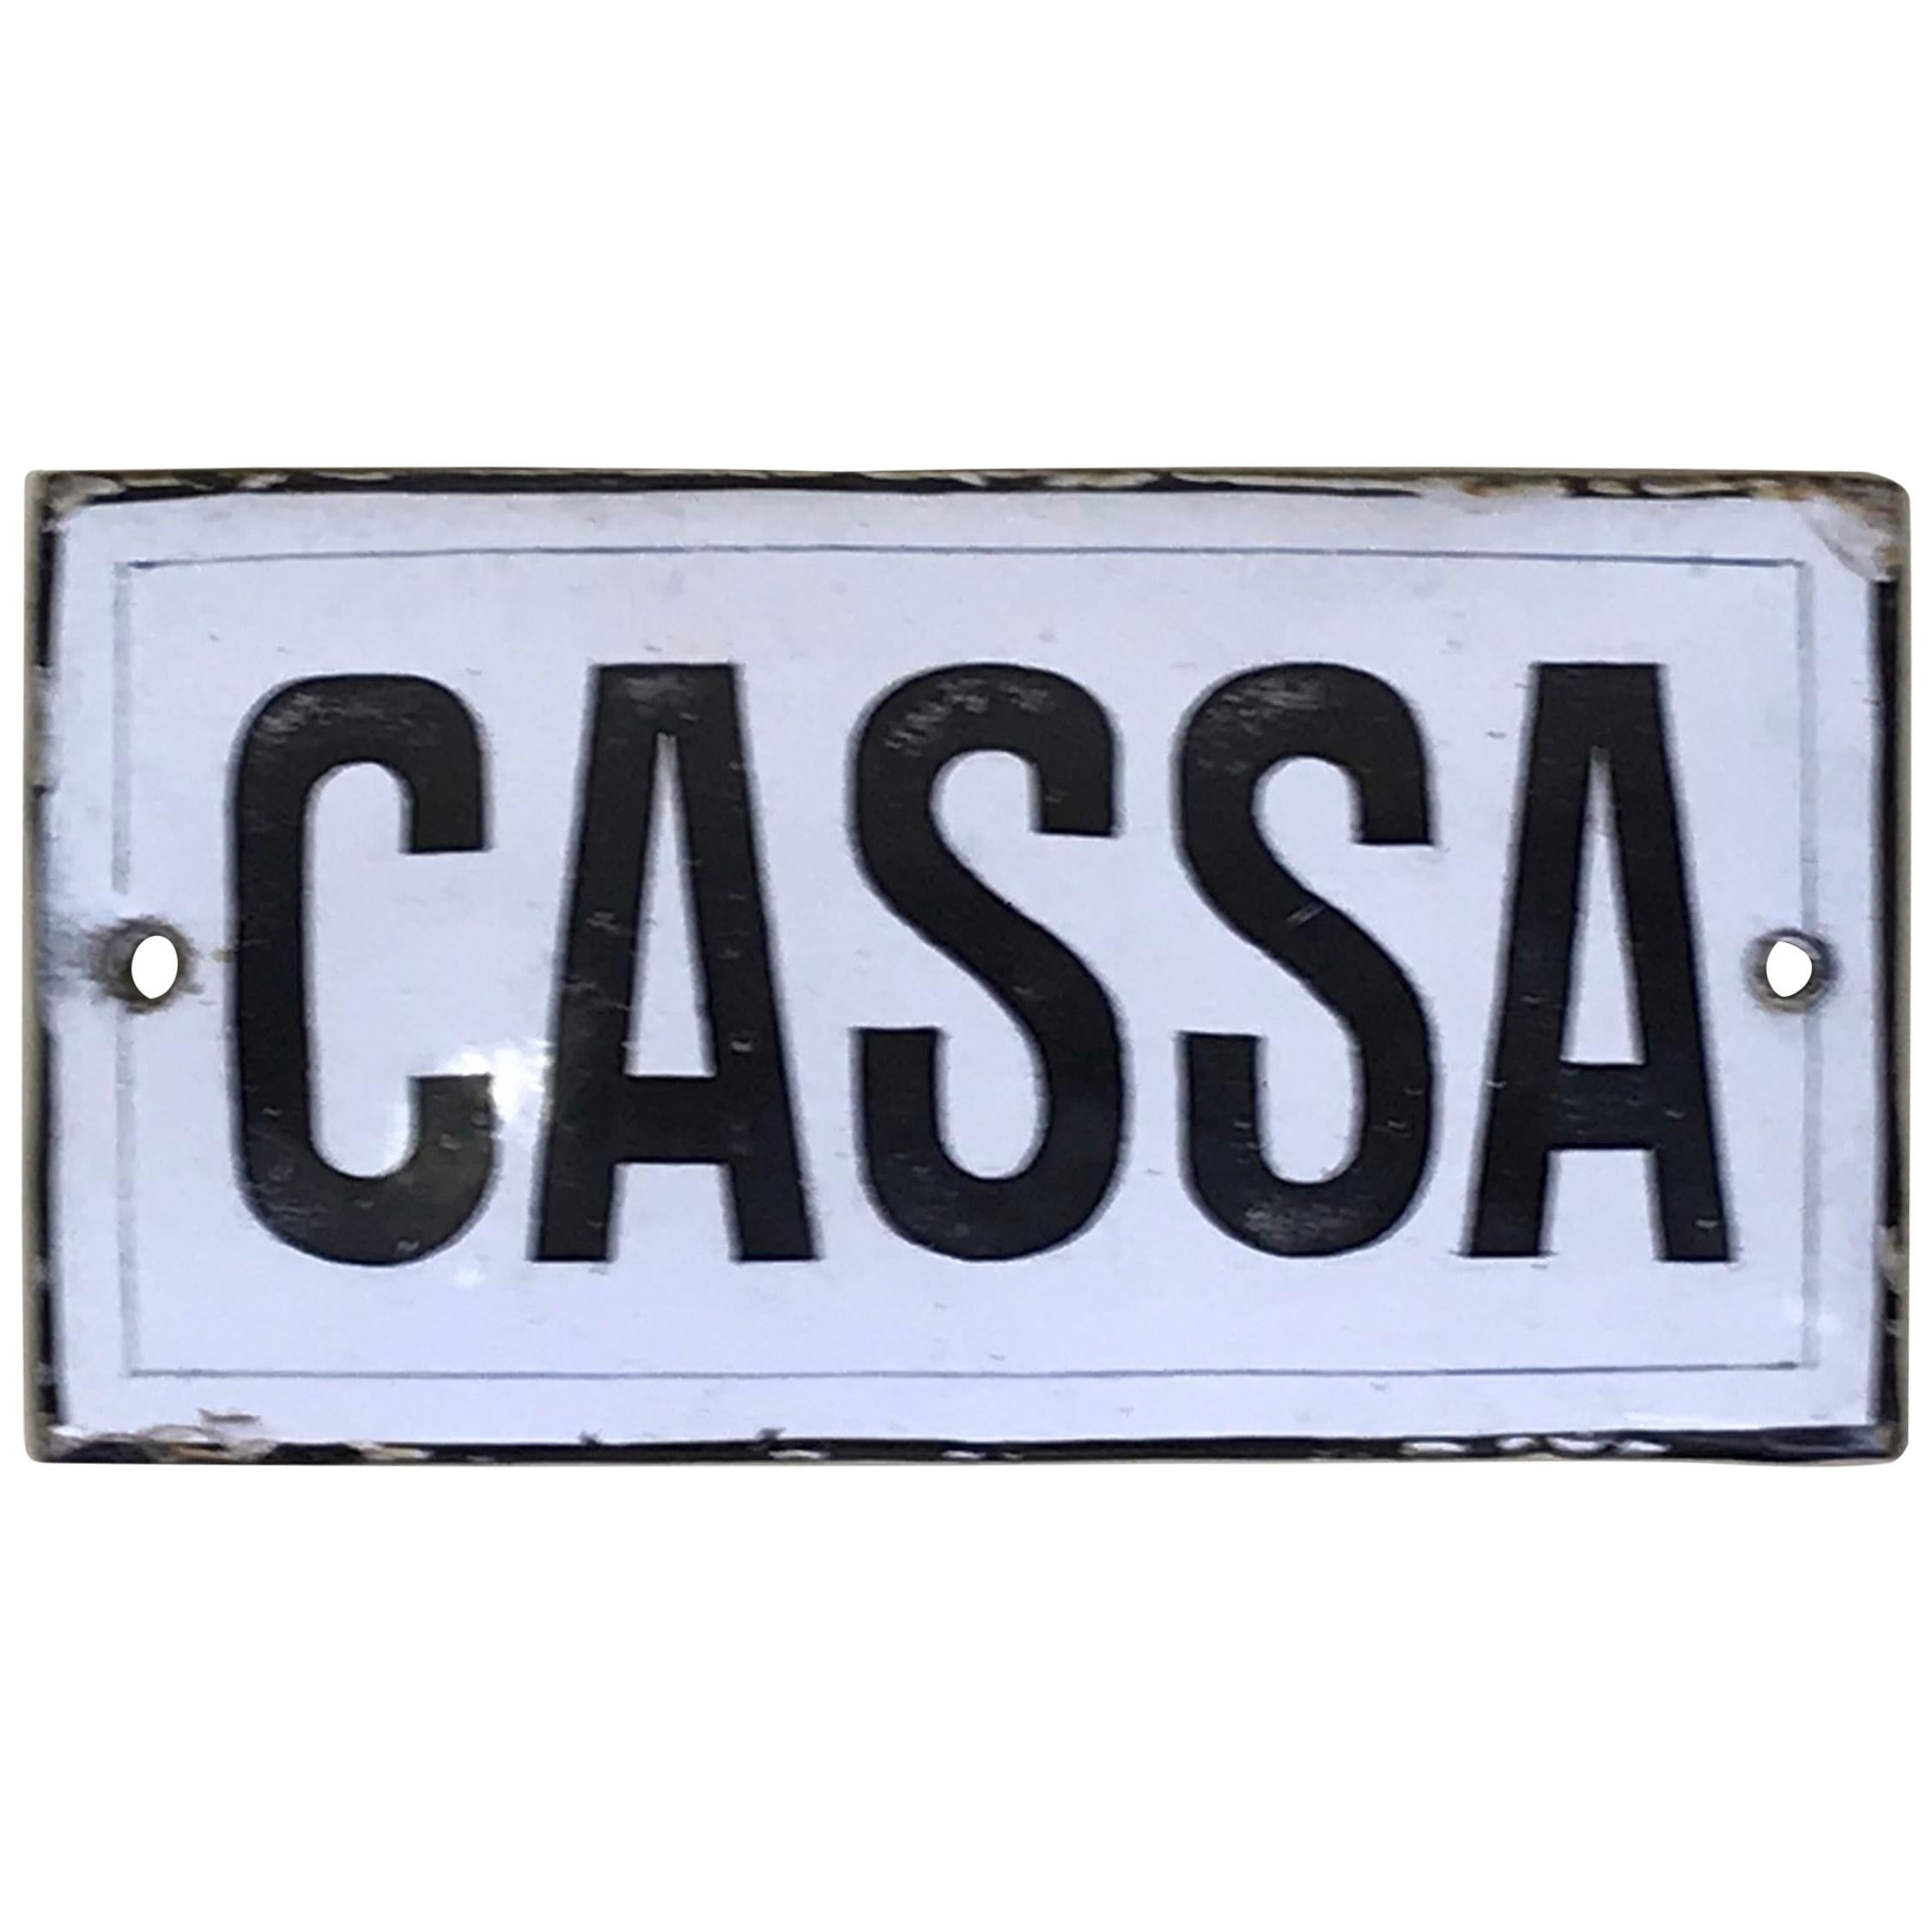 1920s Vintage Curved Italian Enamel Metal Sign "Cassa", ‘Cash Desk Sign’ For Sale